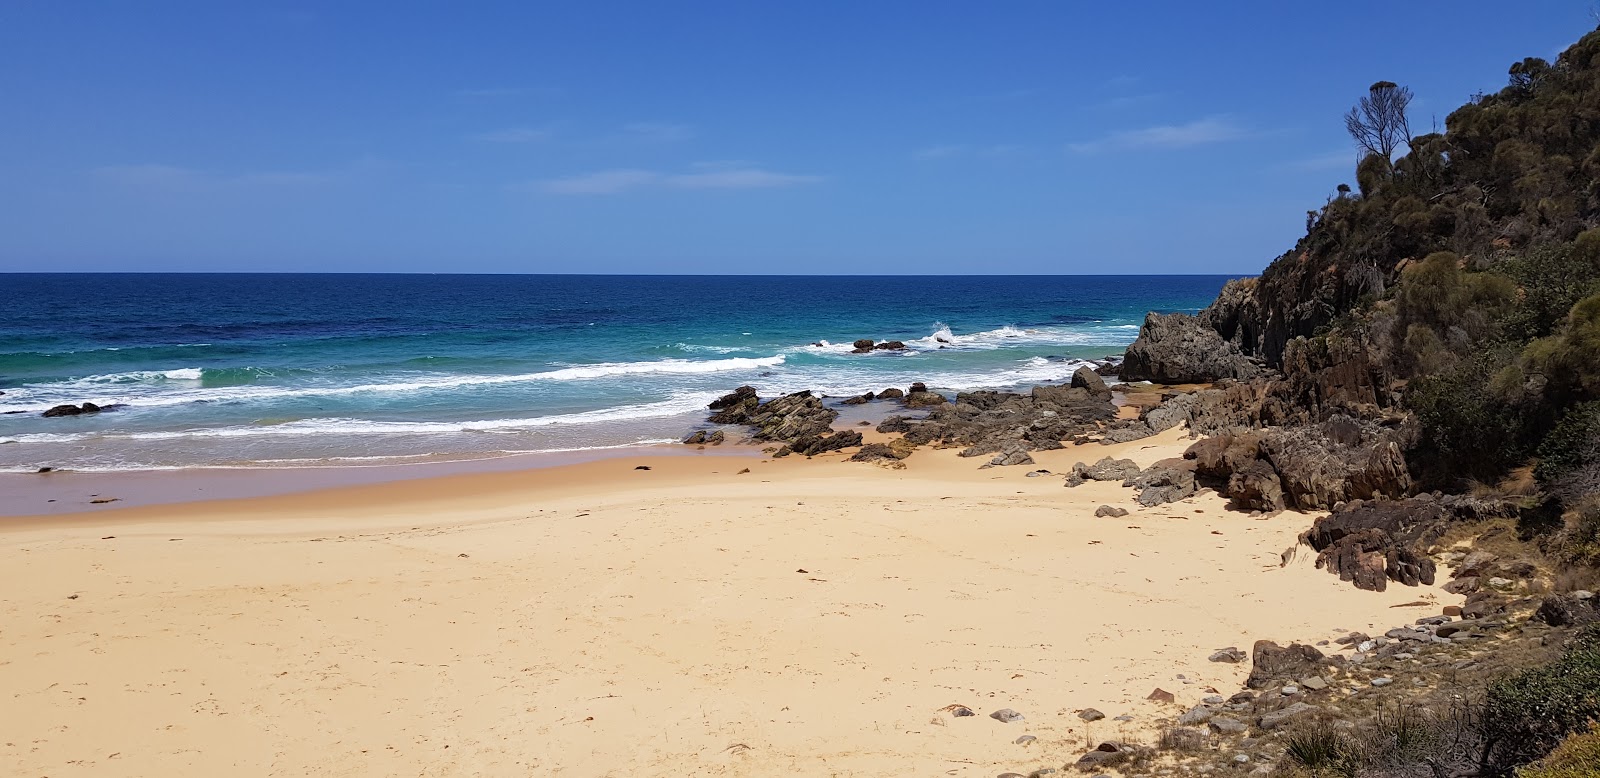 Fotografie cu Picnic Beach - locul popular printre cunoscătorii de relaxare